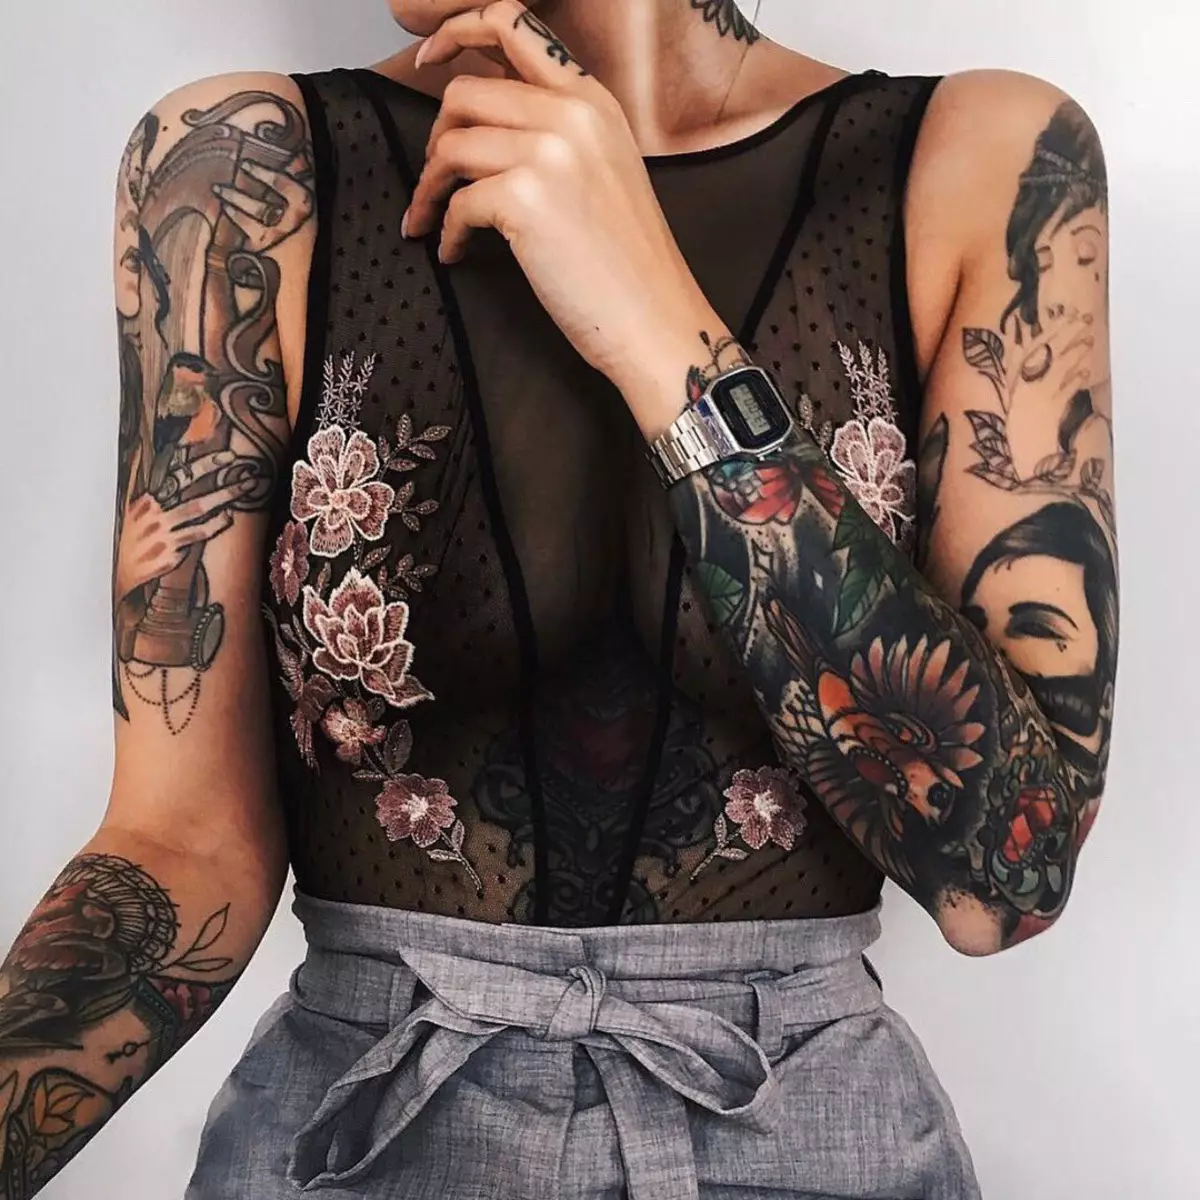 Үлкен татуировкасы: ең үлкен татуировкалардың эскиздері. Үлкен қара татуировкалар және басқа сызбалар 13727_28